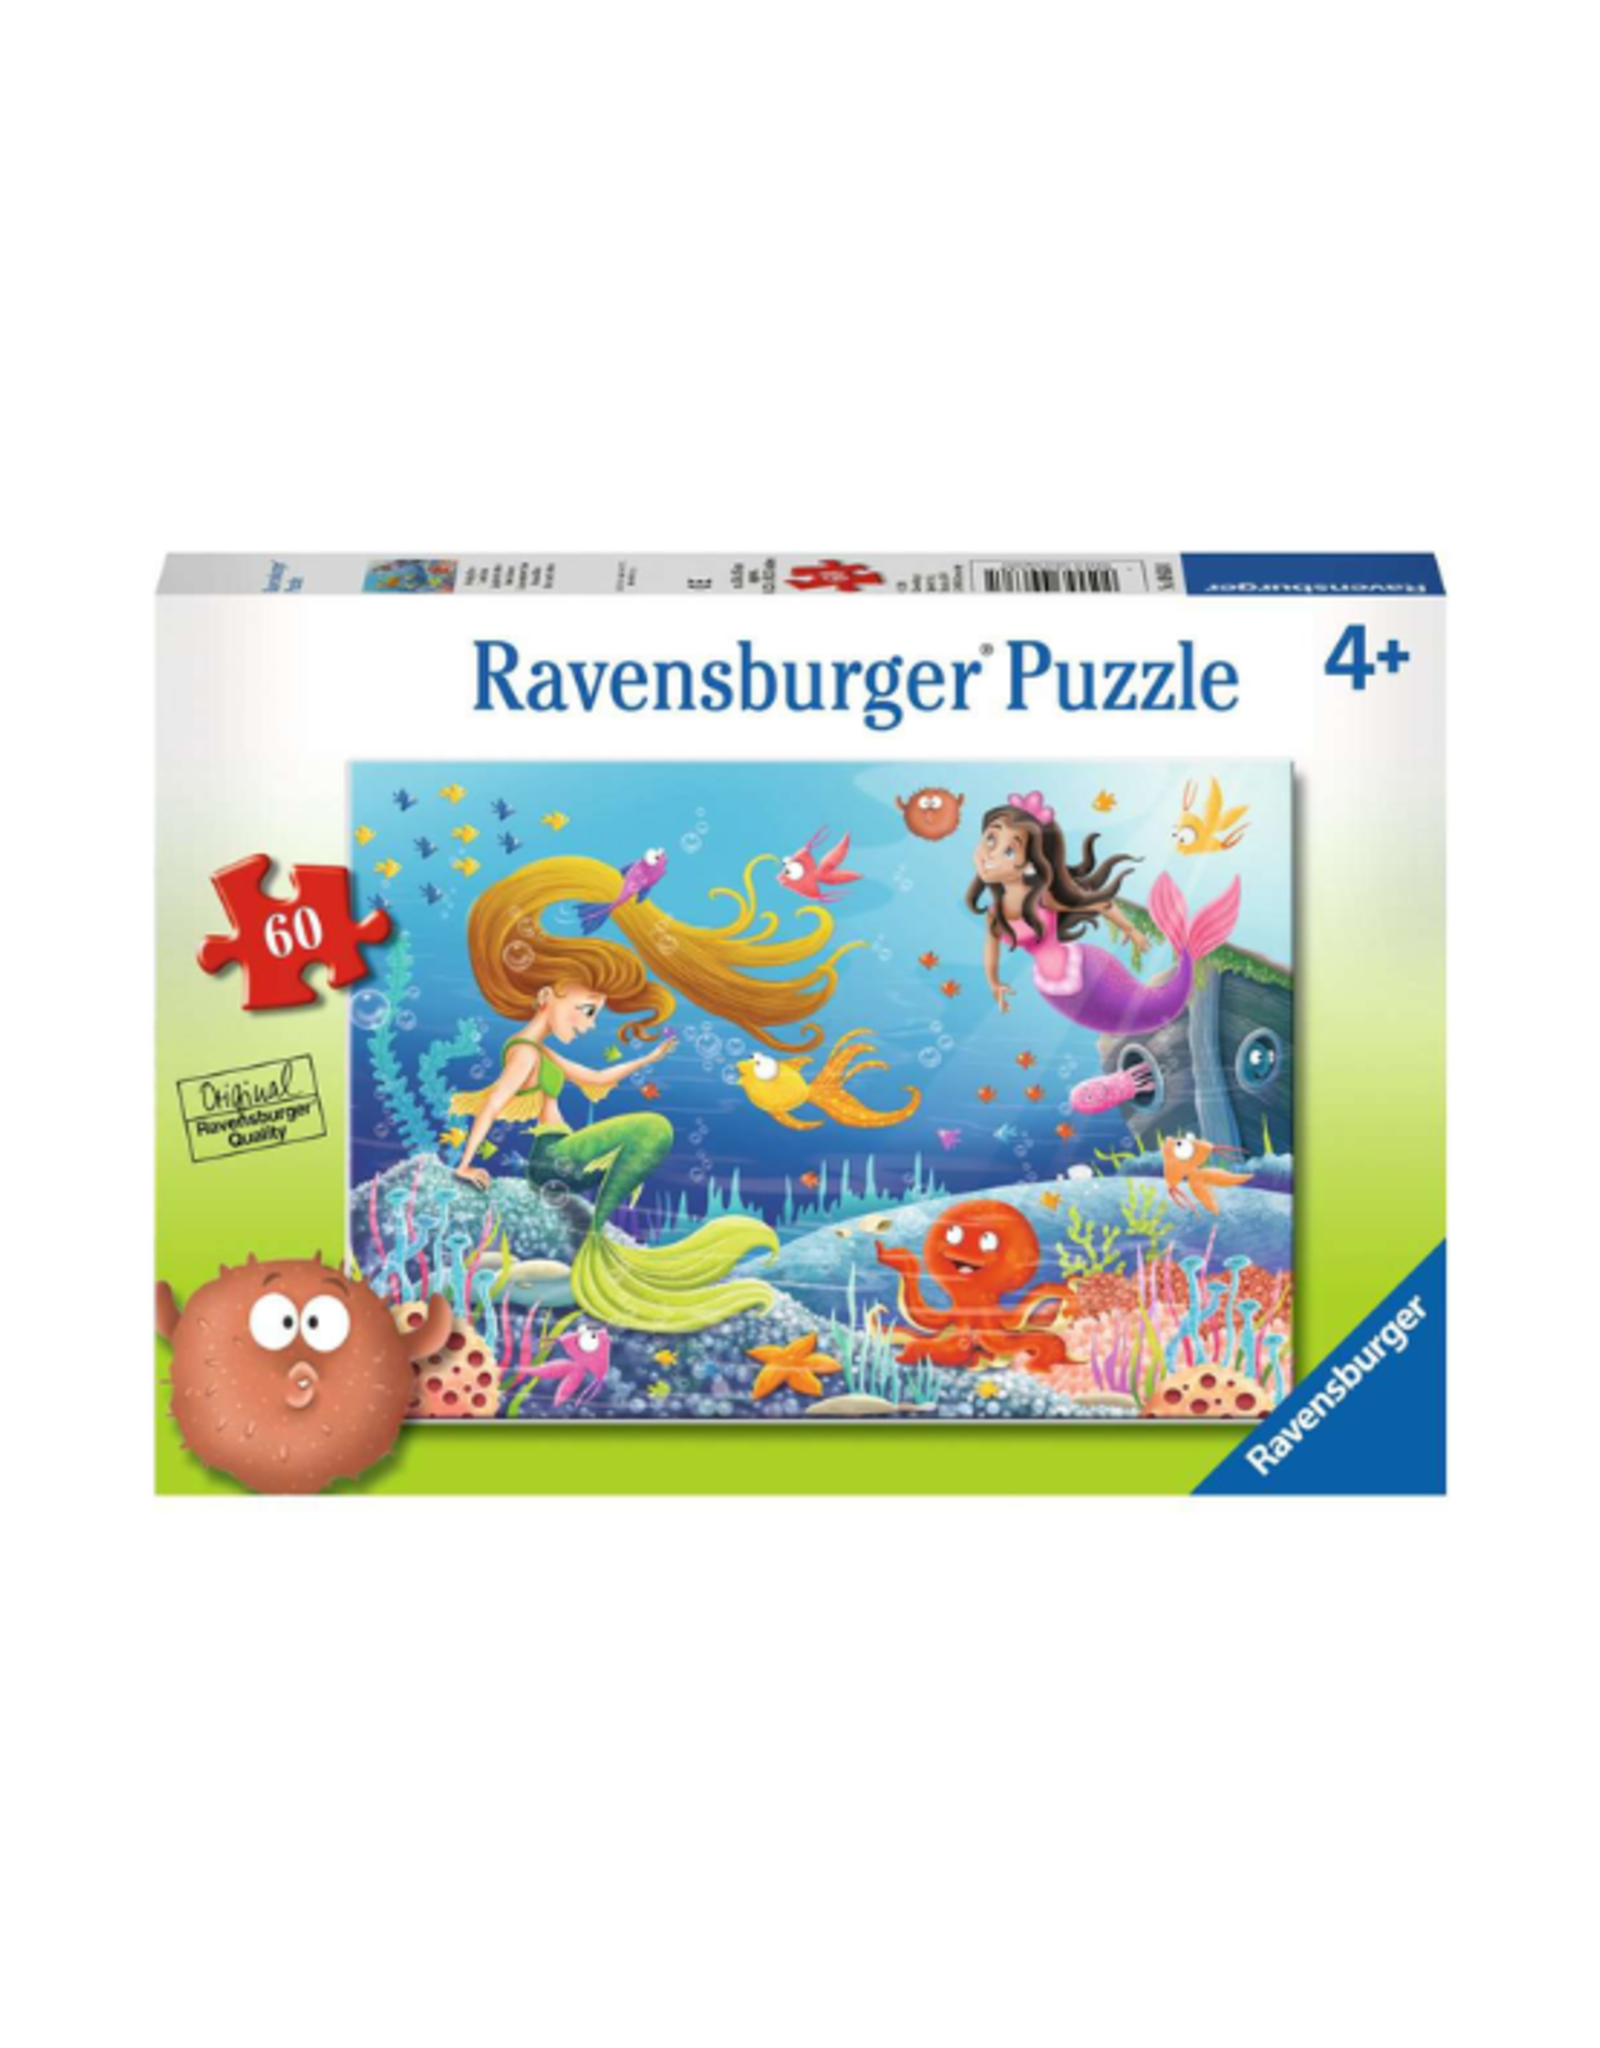 Ravensburger Ravensburger - 4+ - 60pcs - Mermaid Tales